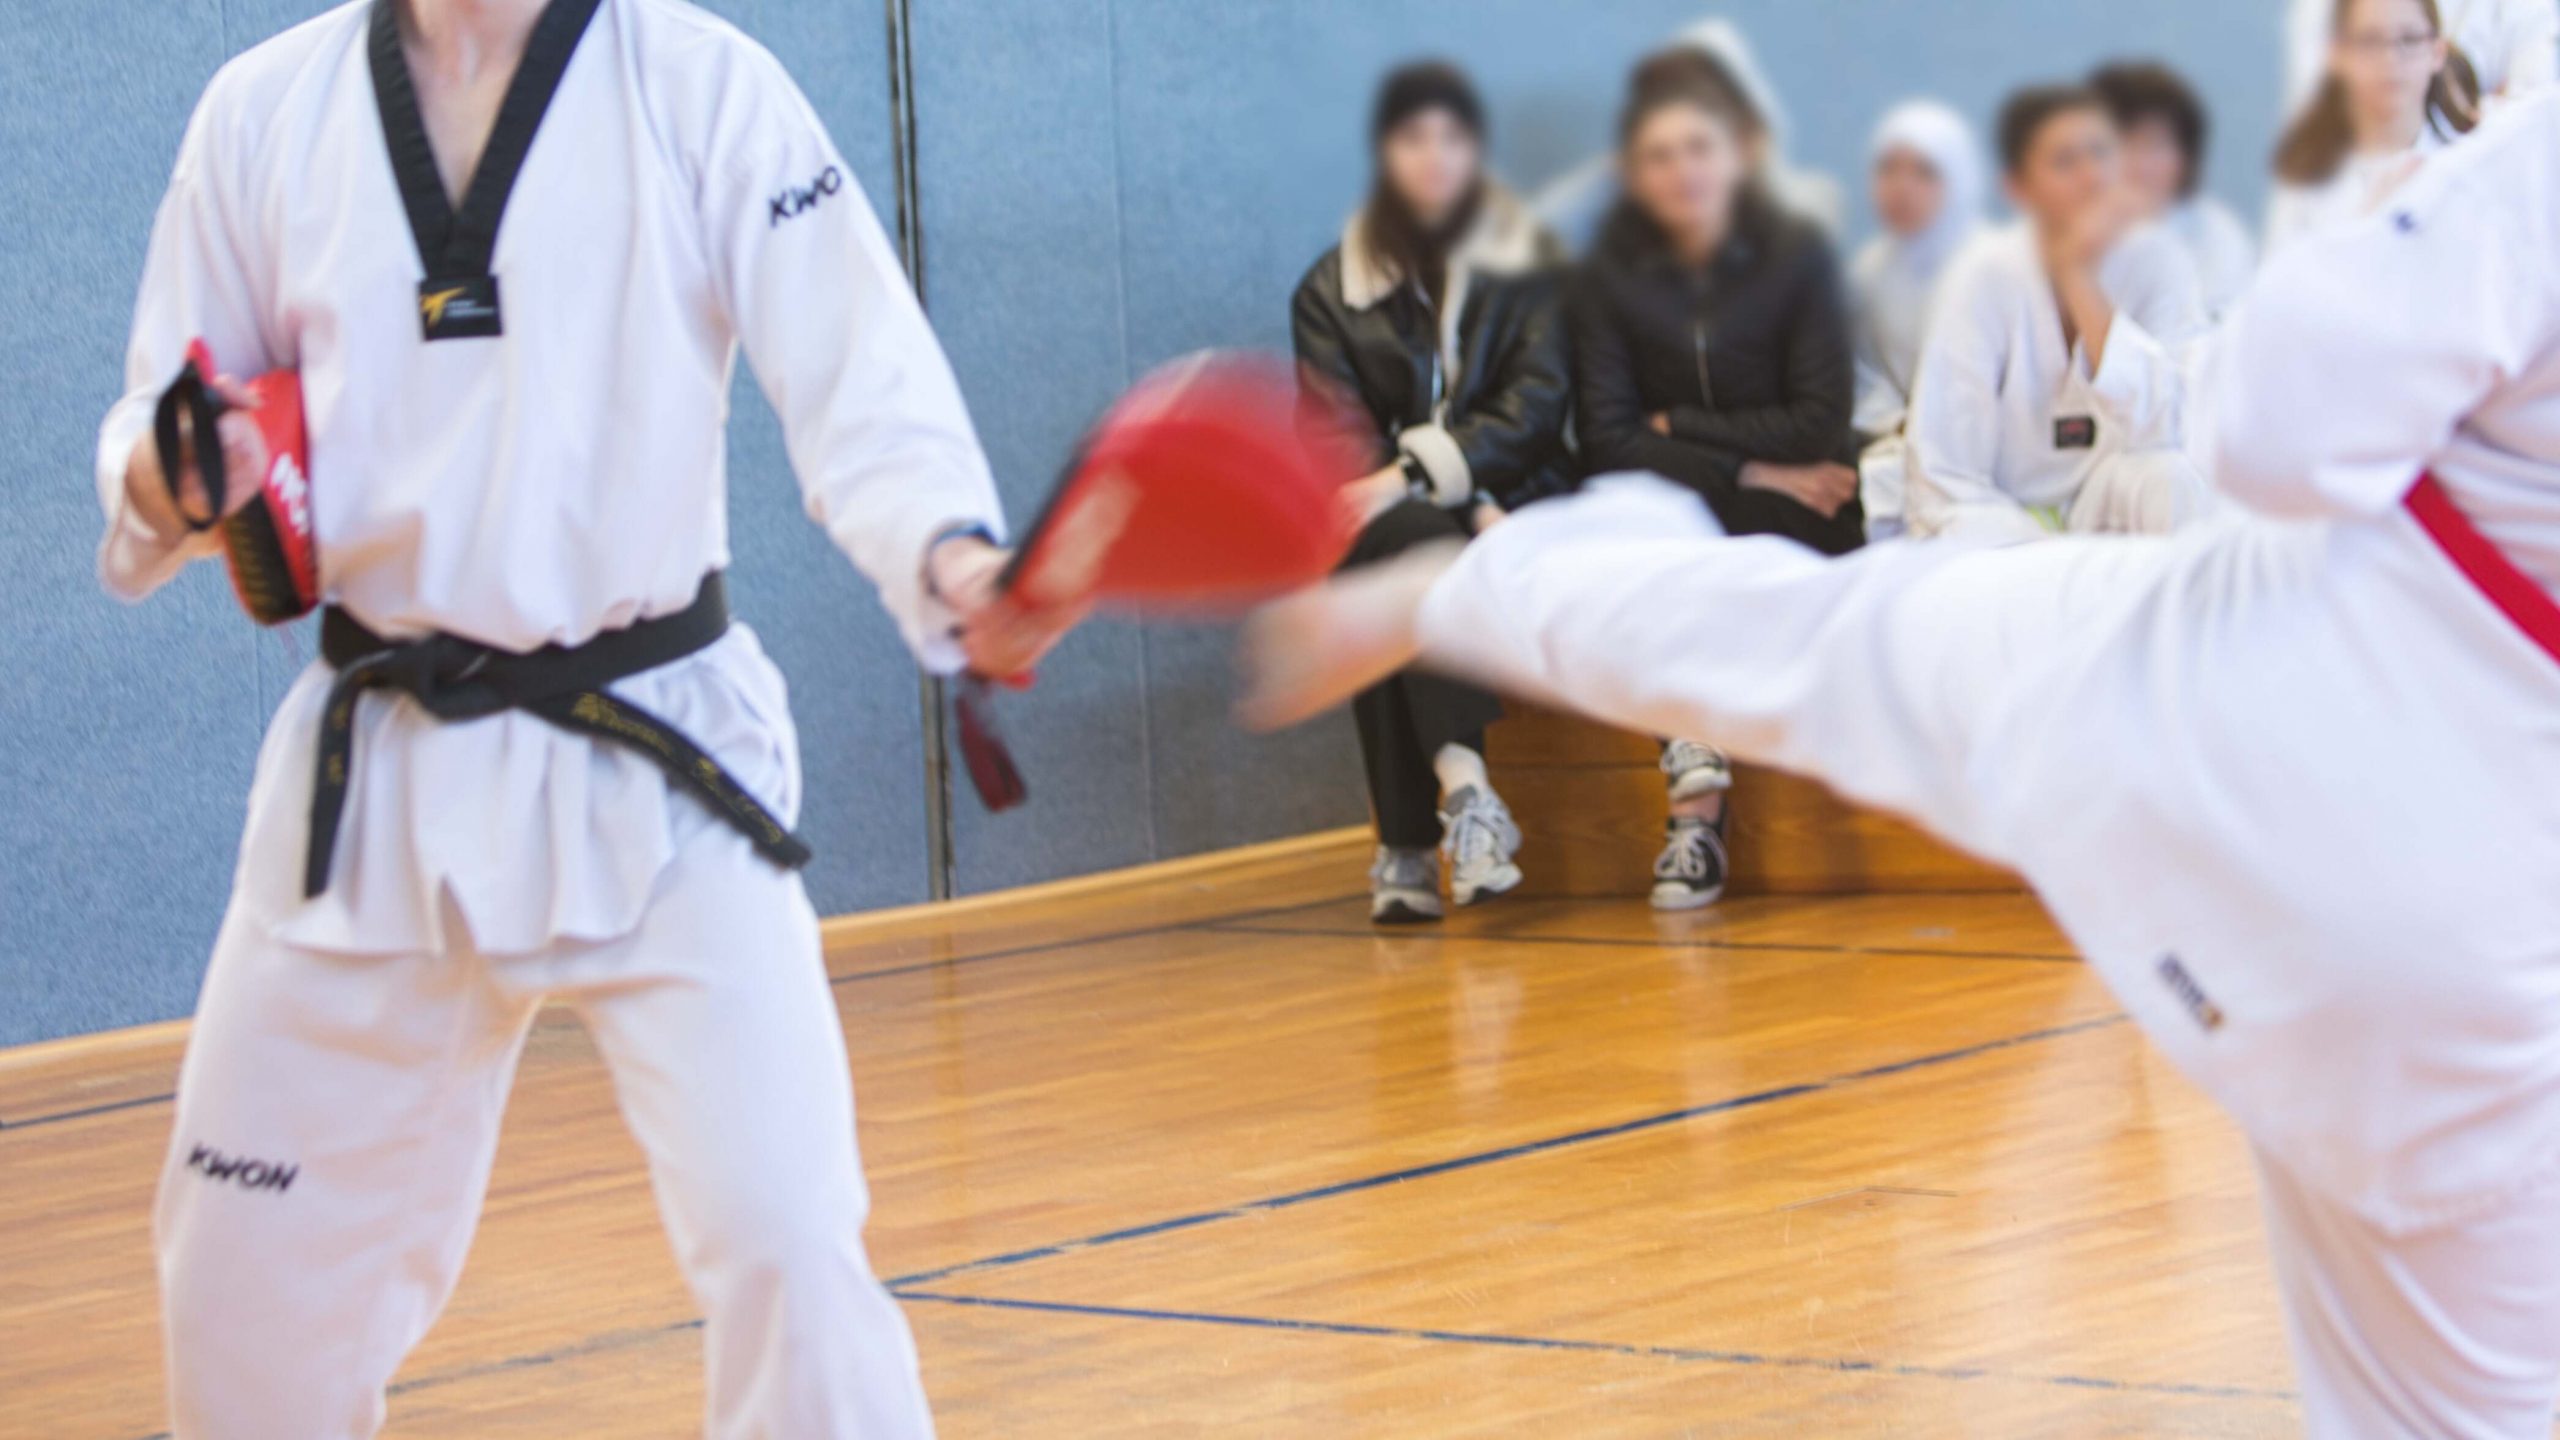 SSK-Taekwondo-Team Kerpen: Sechs gute Gründe für Taekwondo